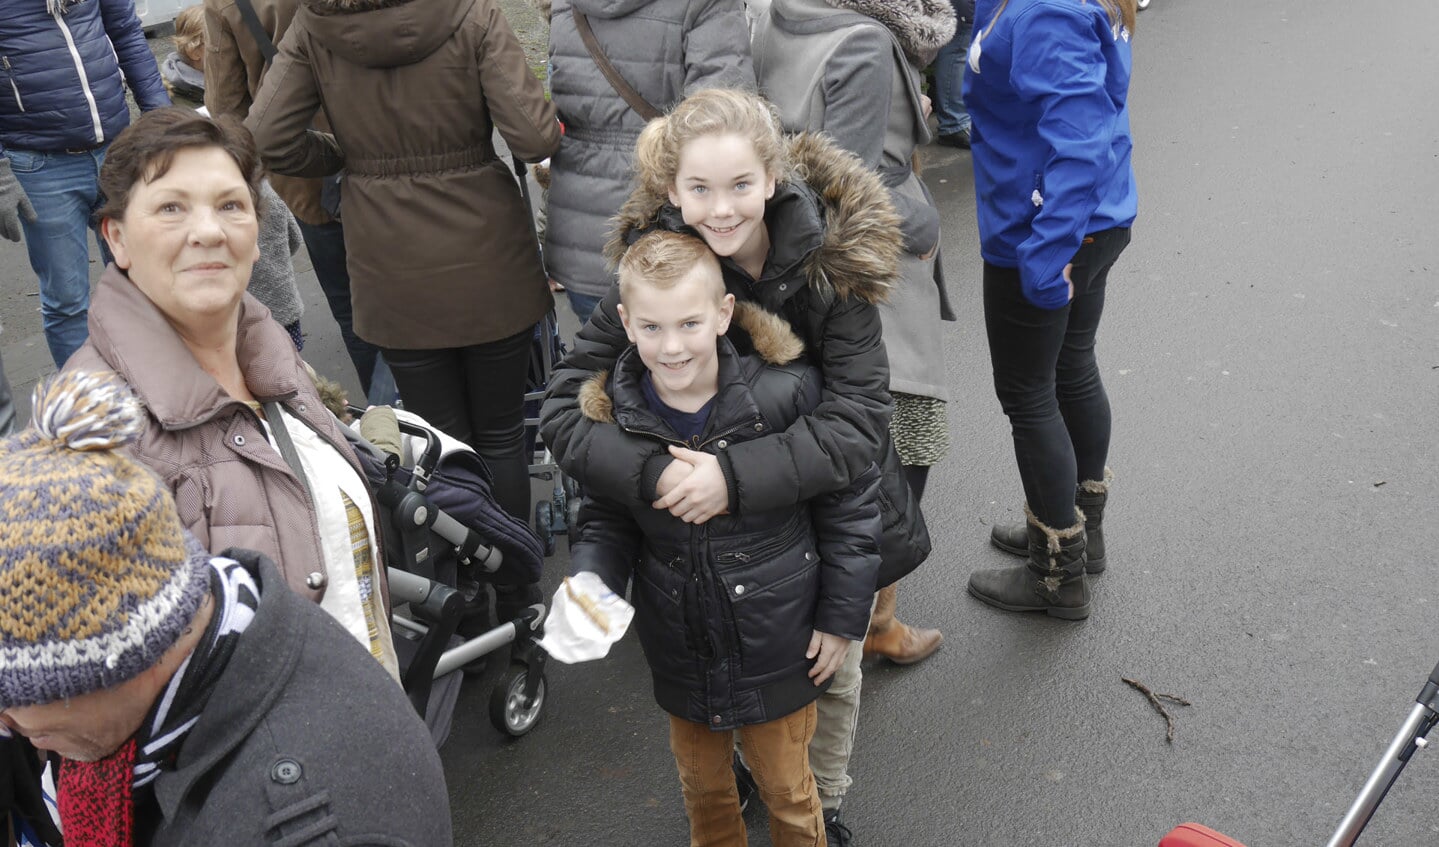 Parade van kinderfiguren door de Bredase binnenstad ter gelegenheid van Winterland Breda.